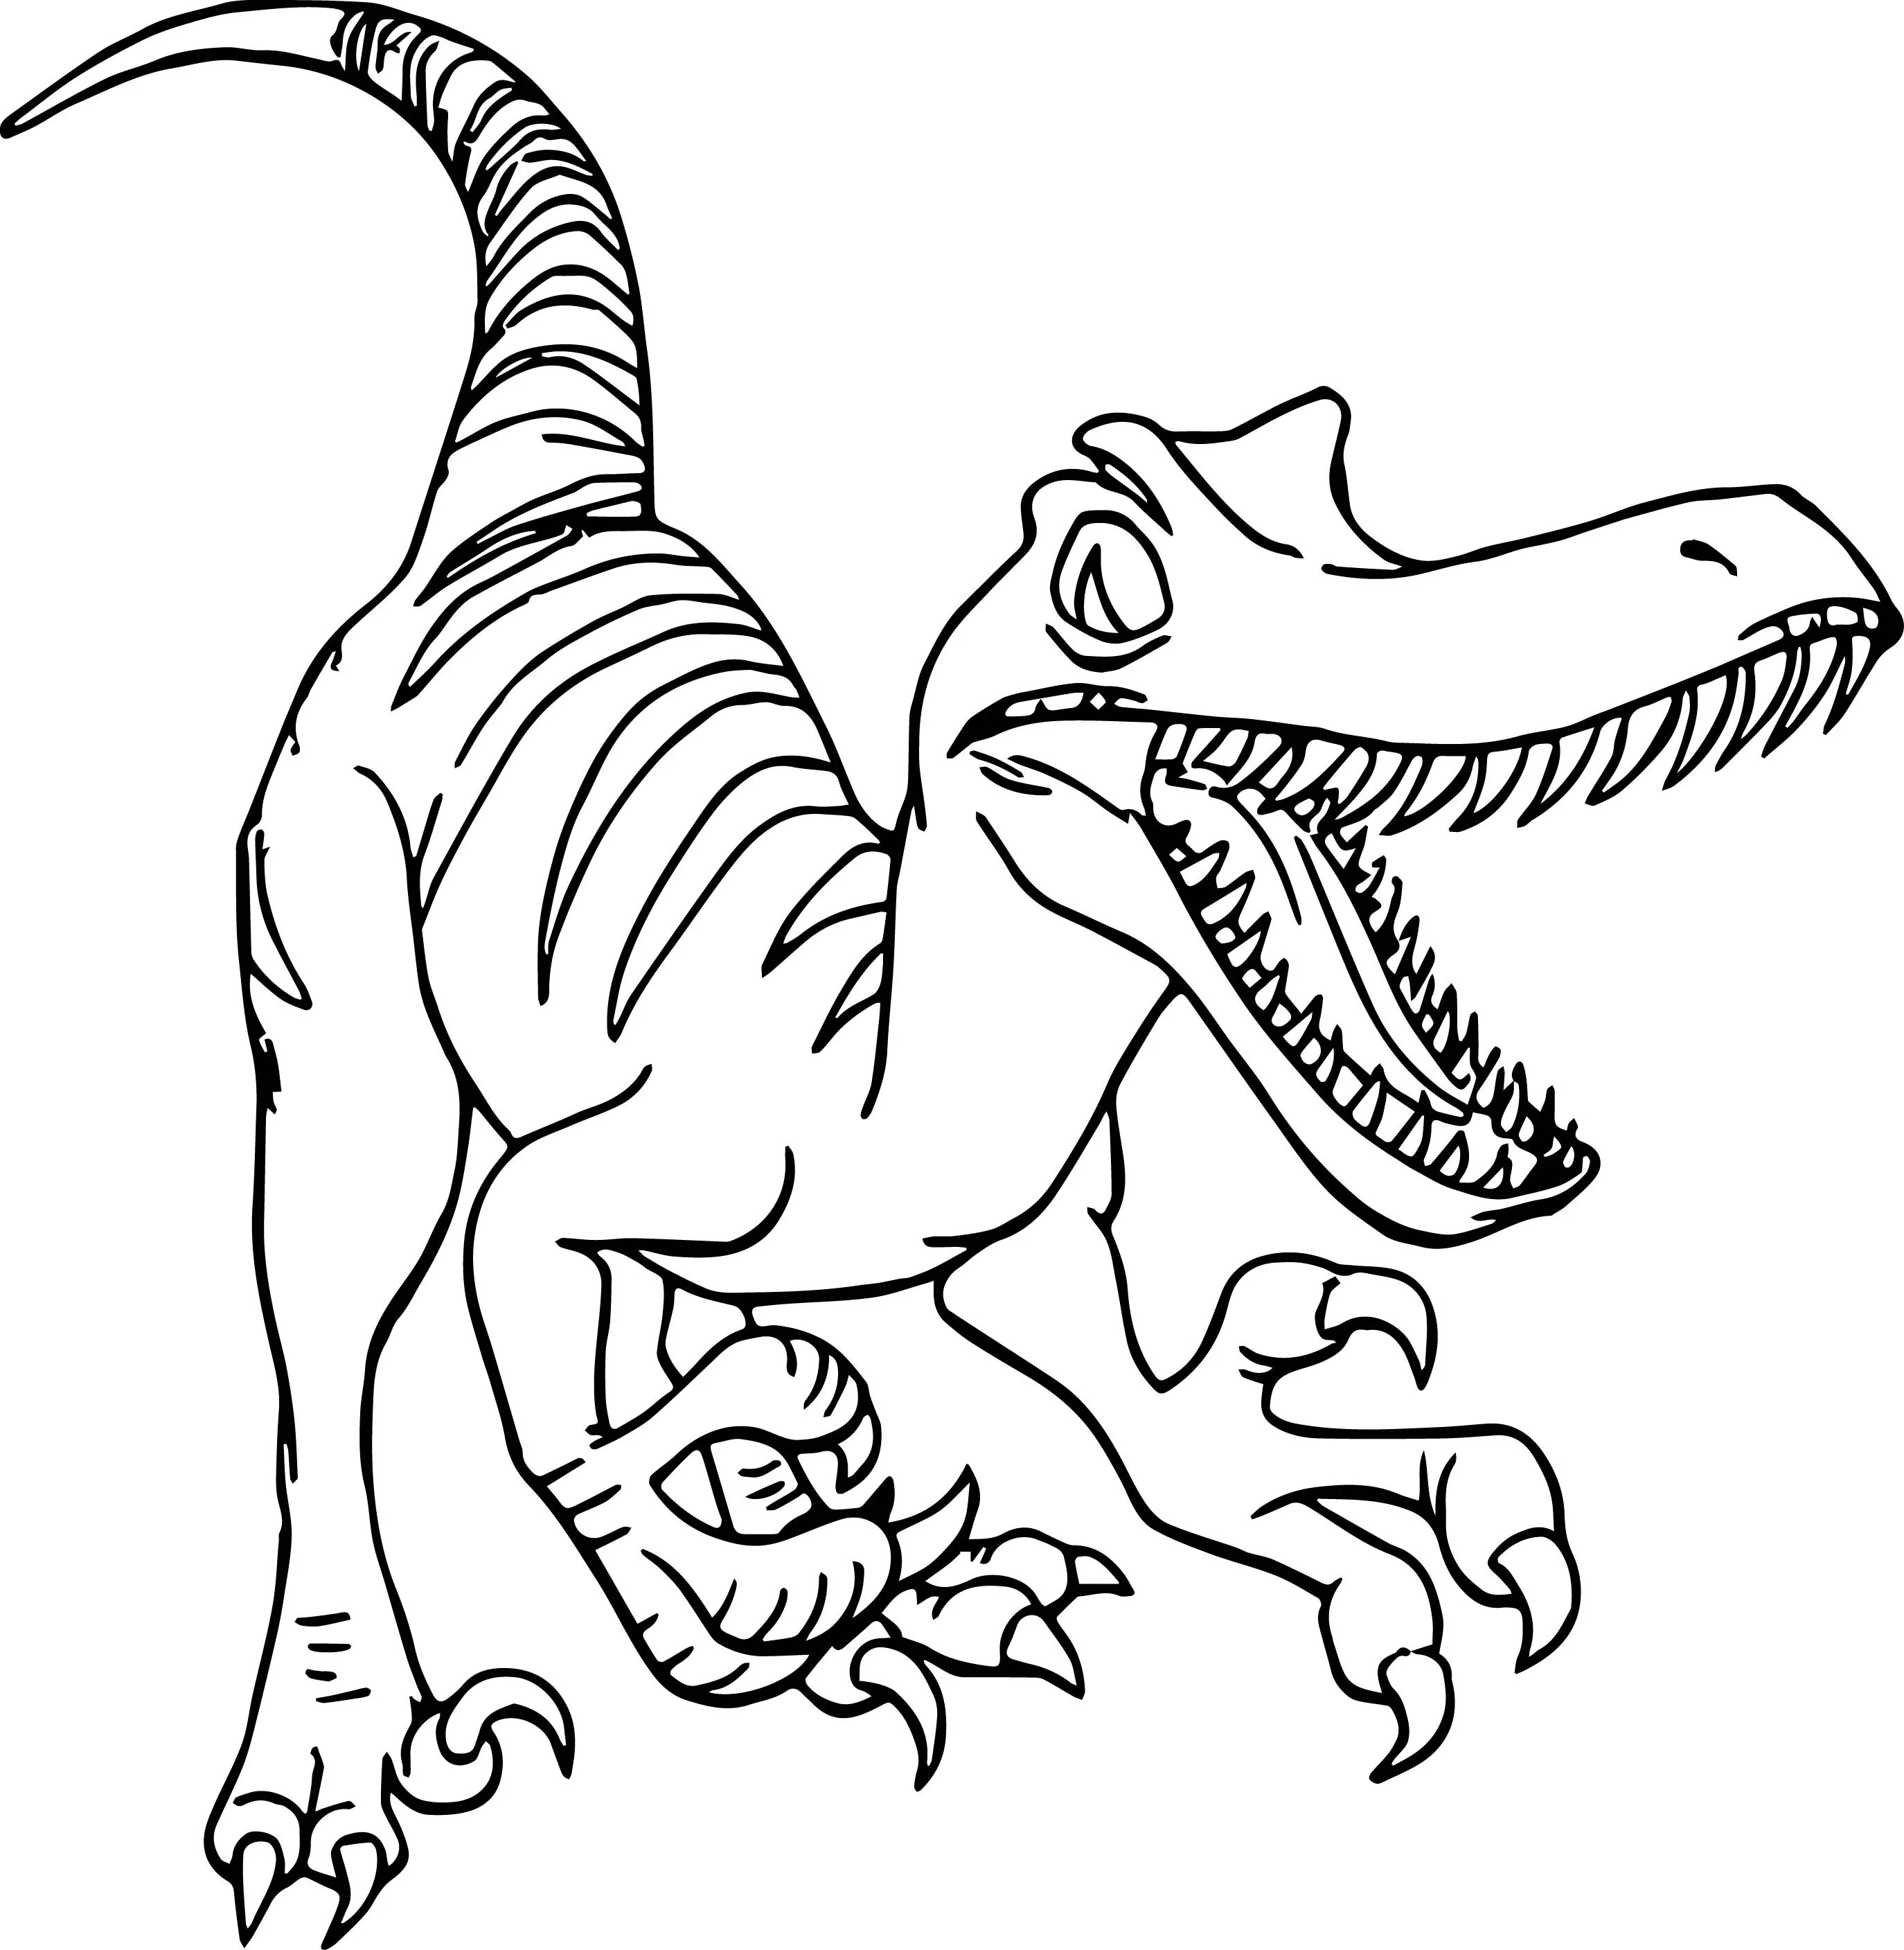 Раскраска динозавр формат а4. Раскраска Велоцираптор Блю. Раскраски динозавры Велоцираптор. Раскраска динозавр Раптор. Динозавры раскраски для детей для печати.